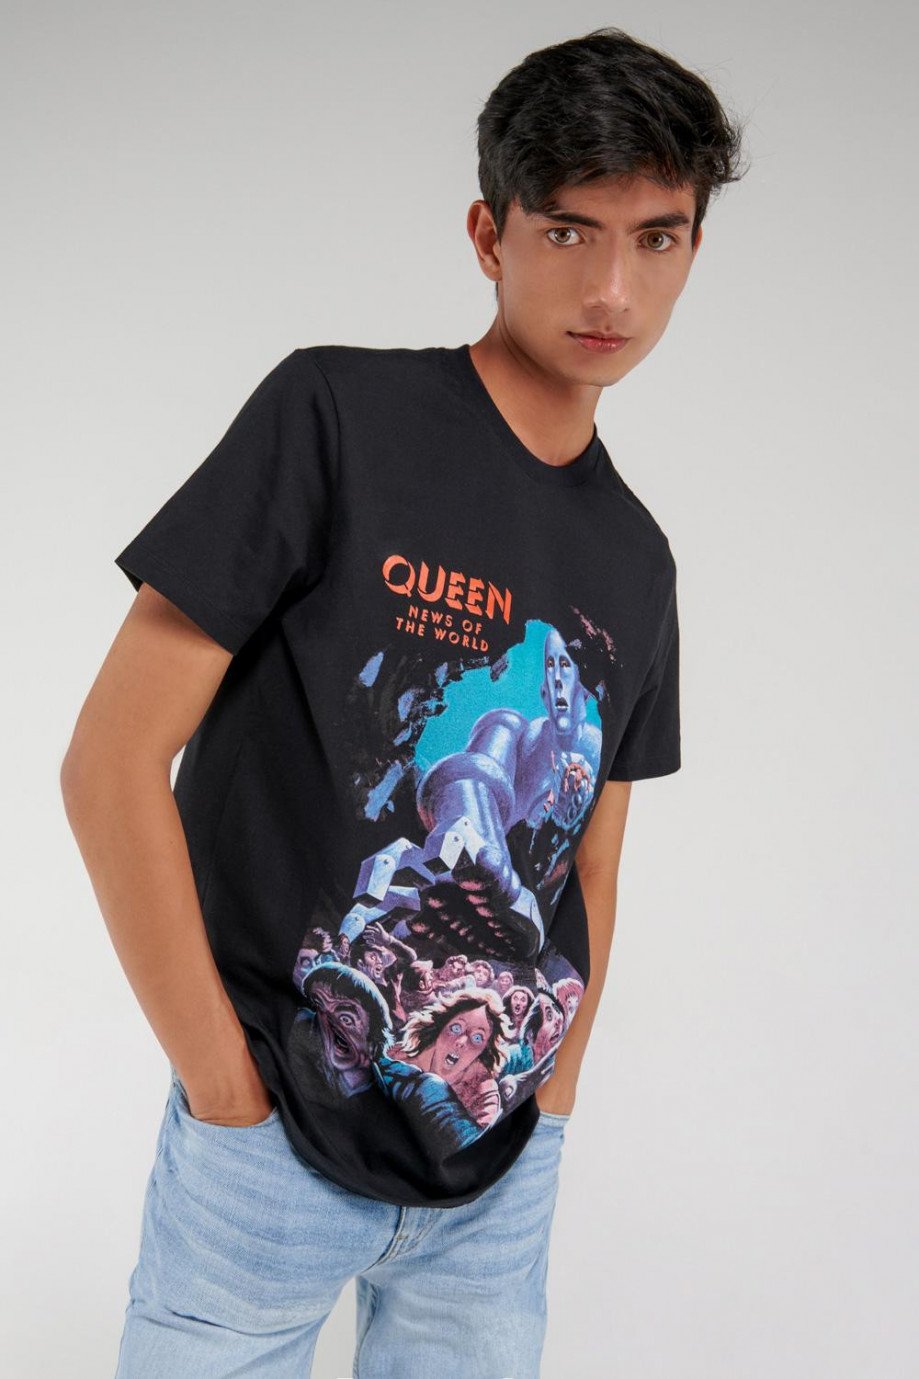 Camiseta manga corta, estampado de Queen.